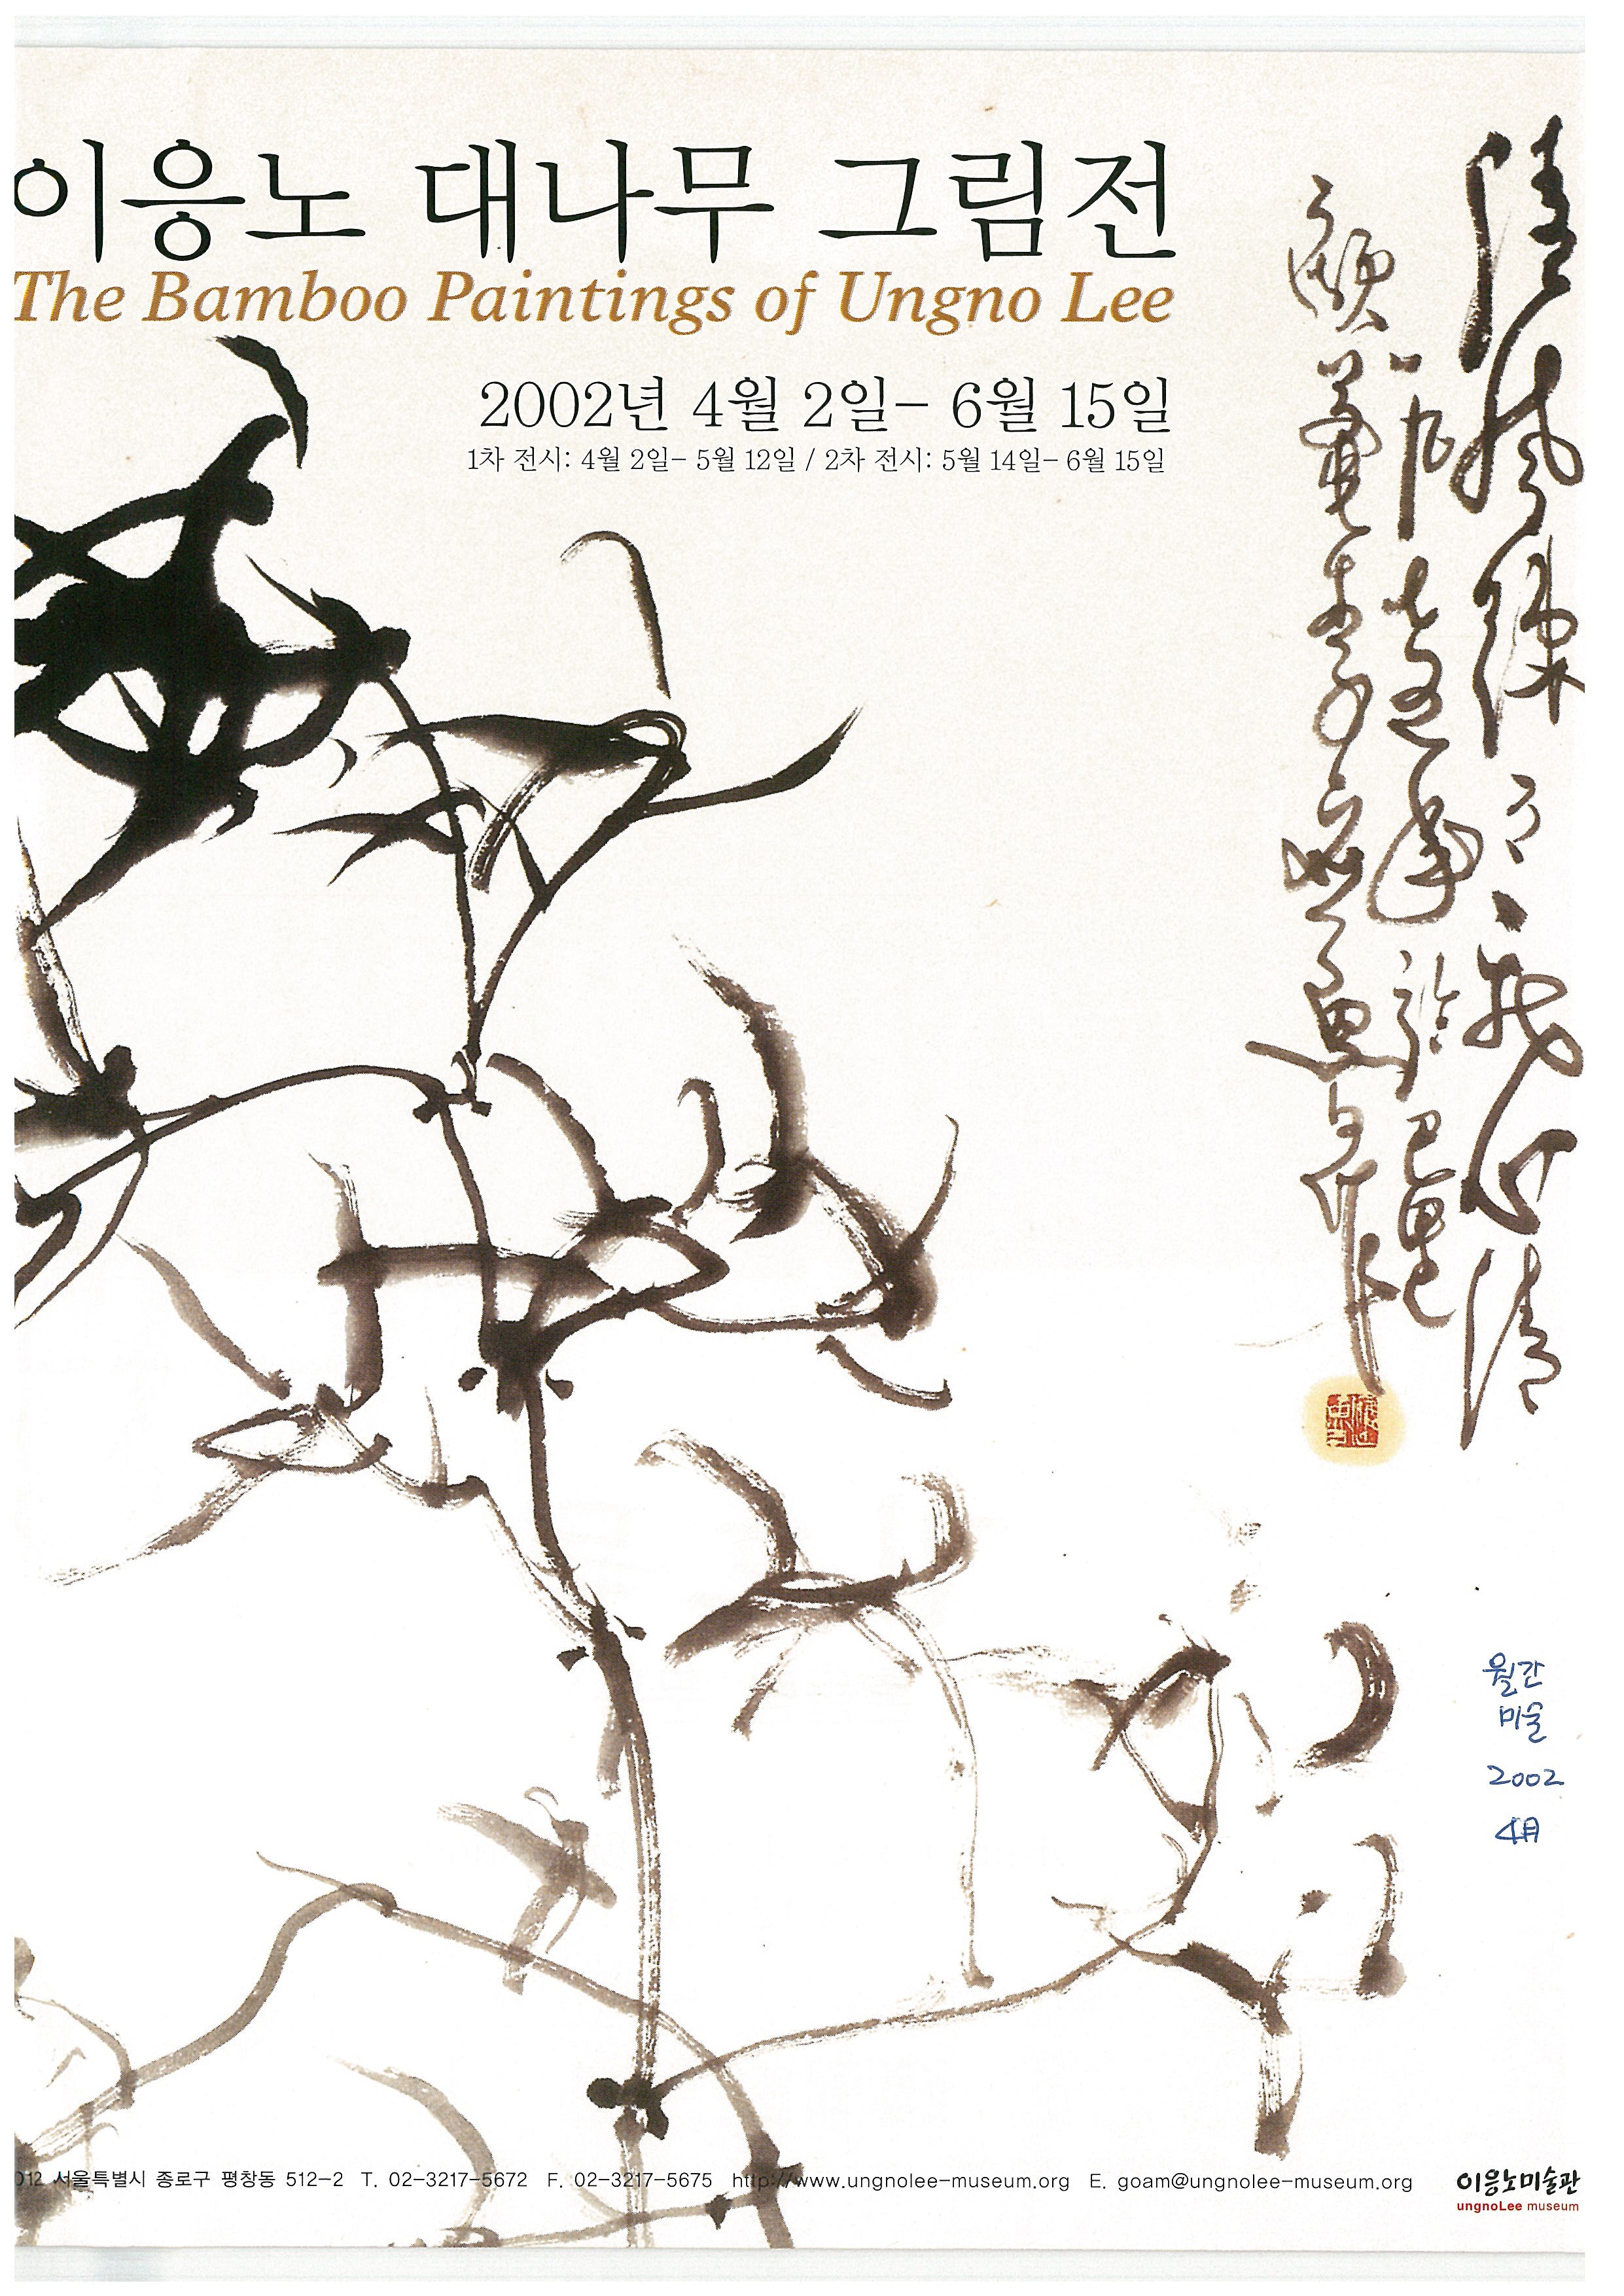  「이응노 대나무 그림전」, 『월간미술』 